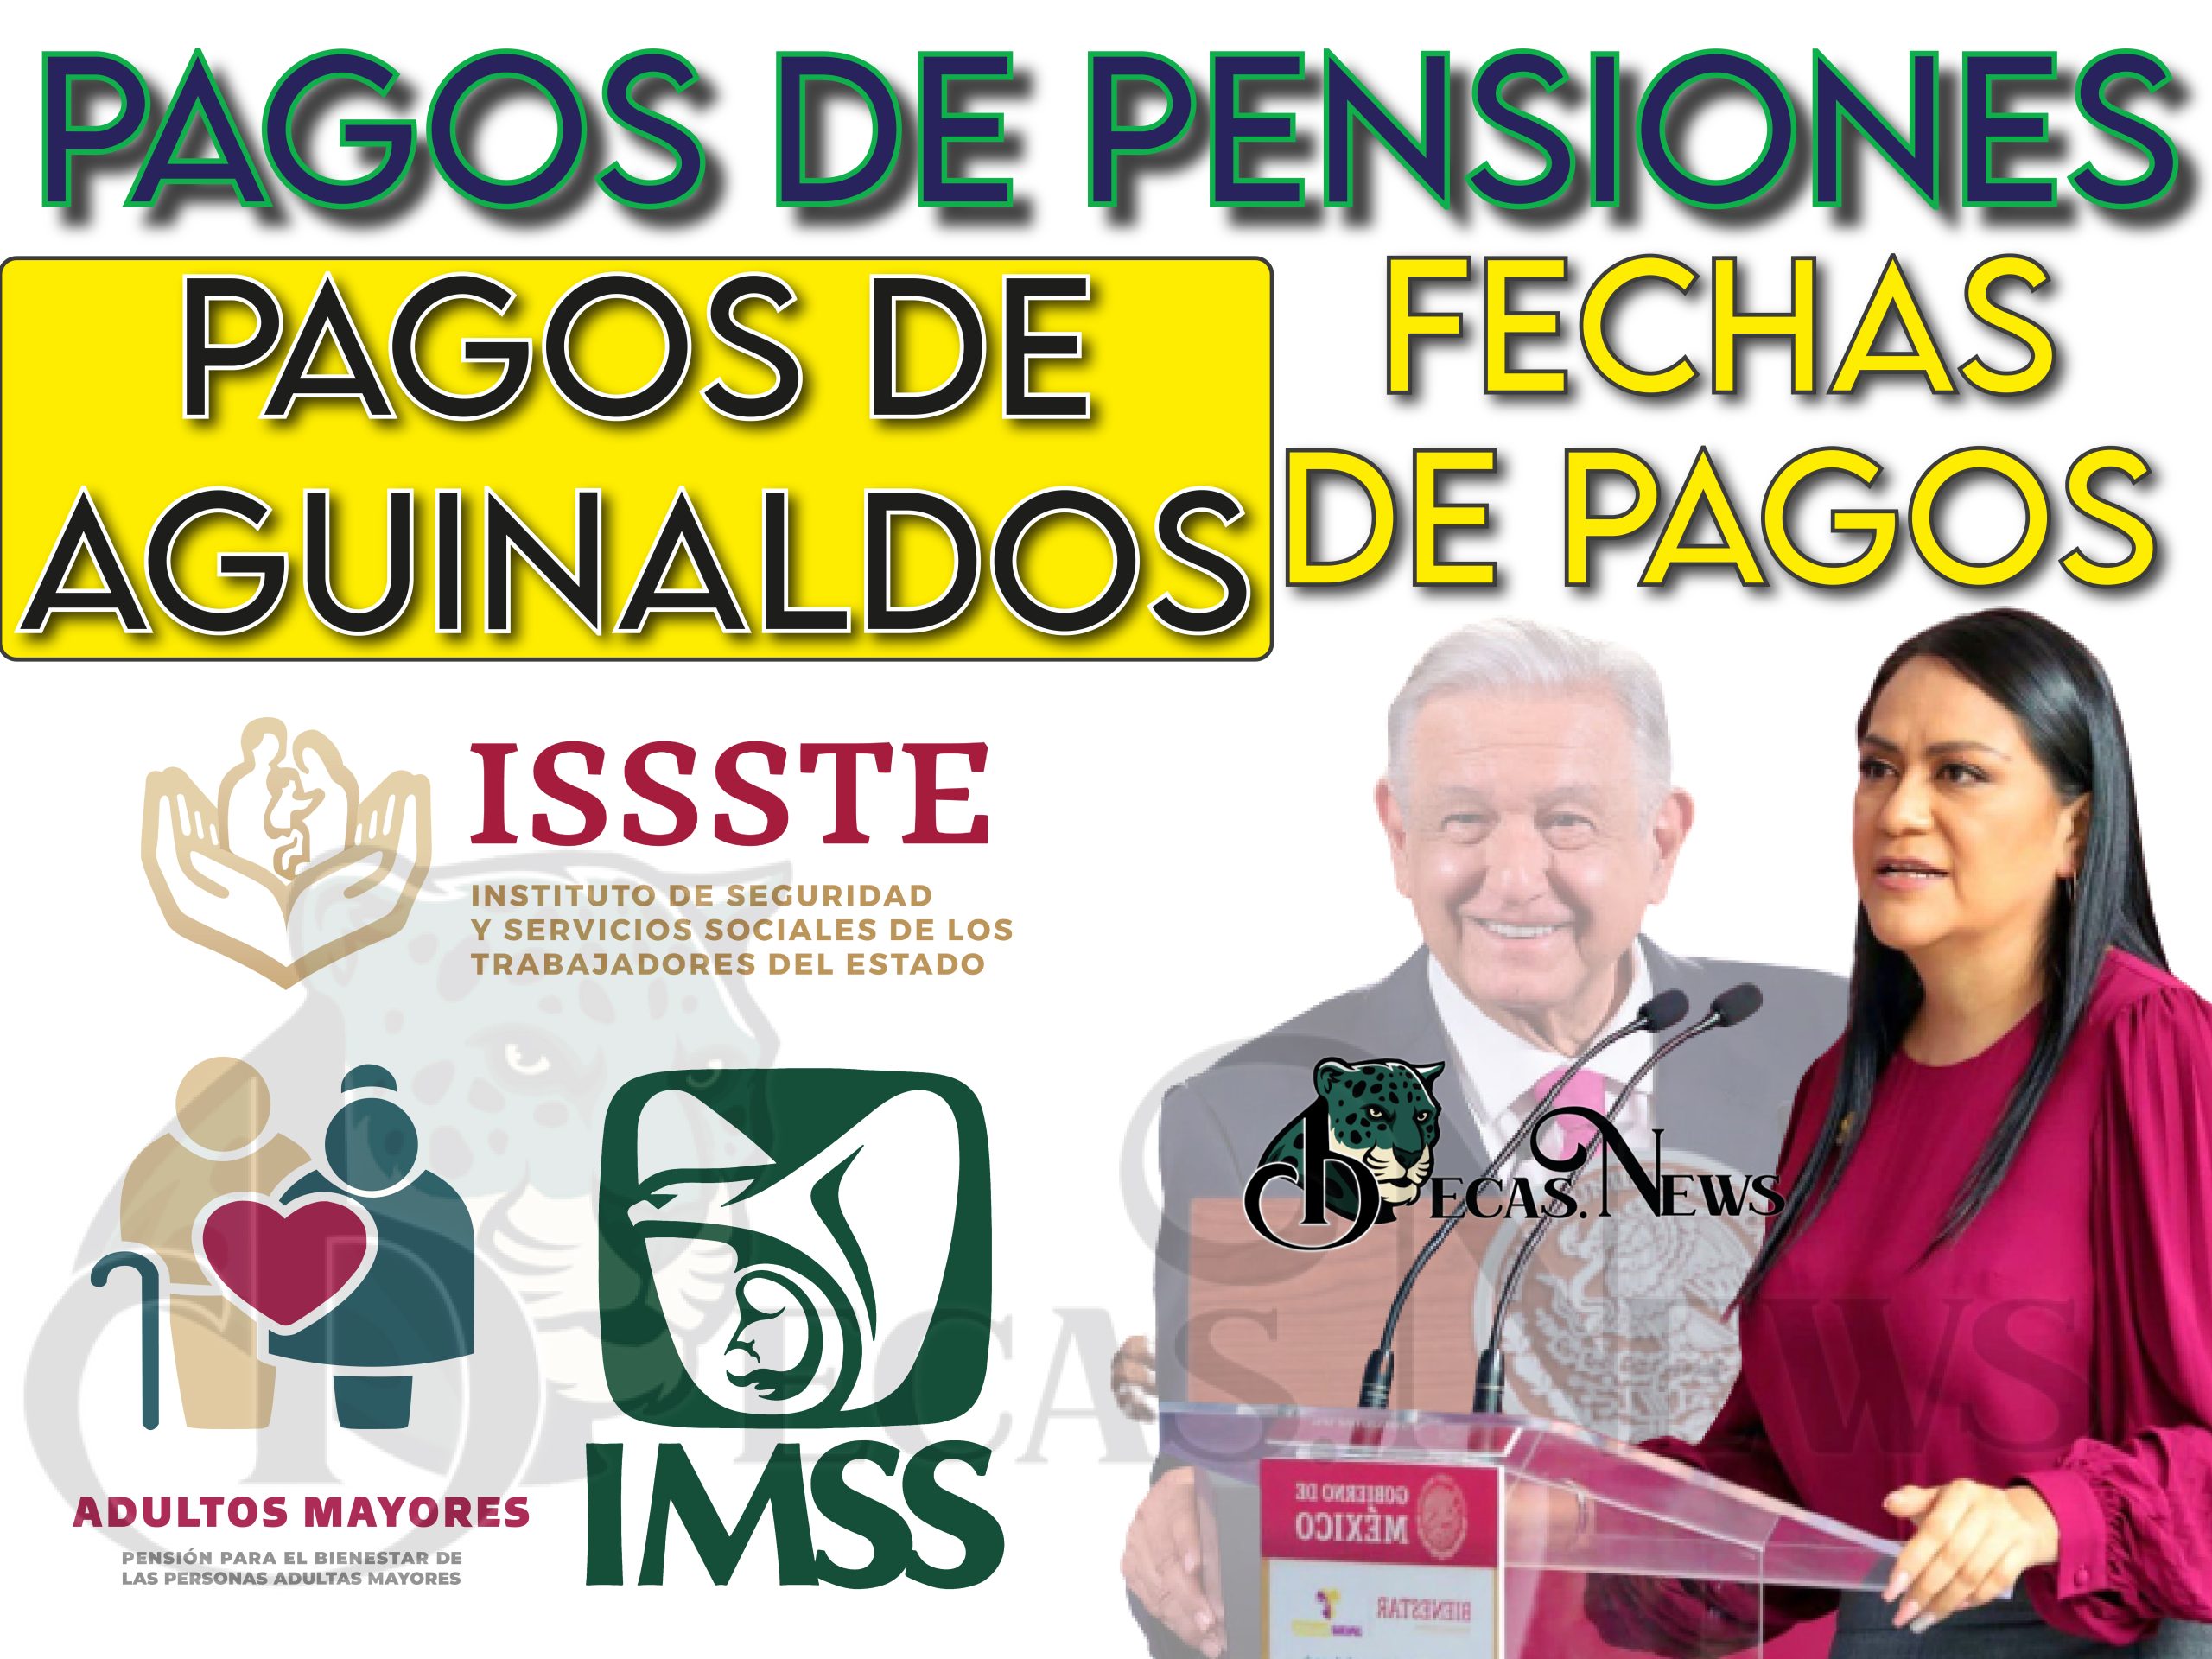 Fechas de pagos de para adultos mayores: Pensión IMSS, ISSSTE Y BIENESTAR